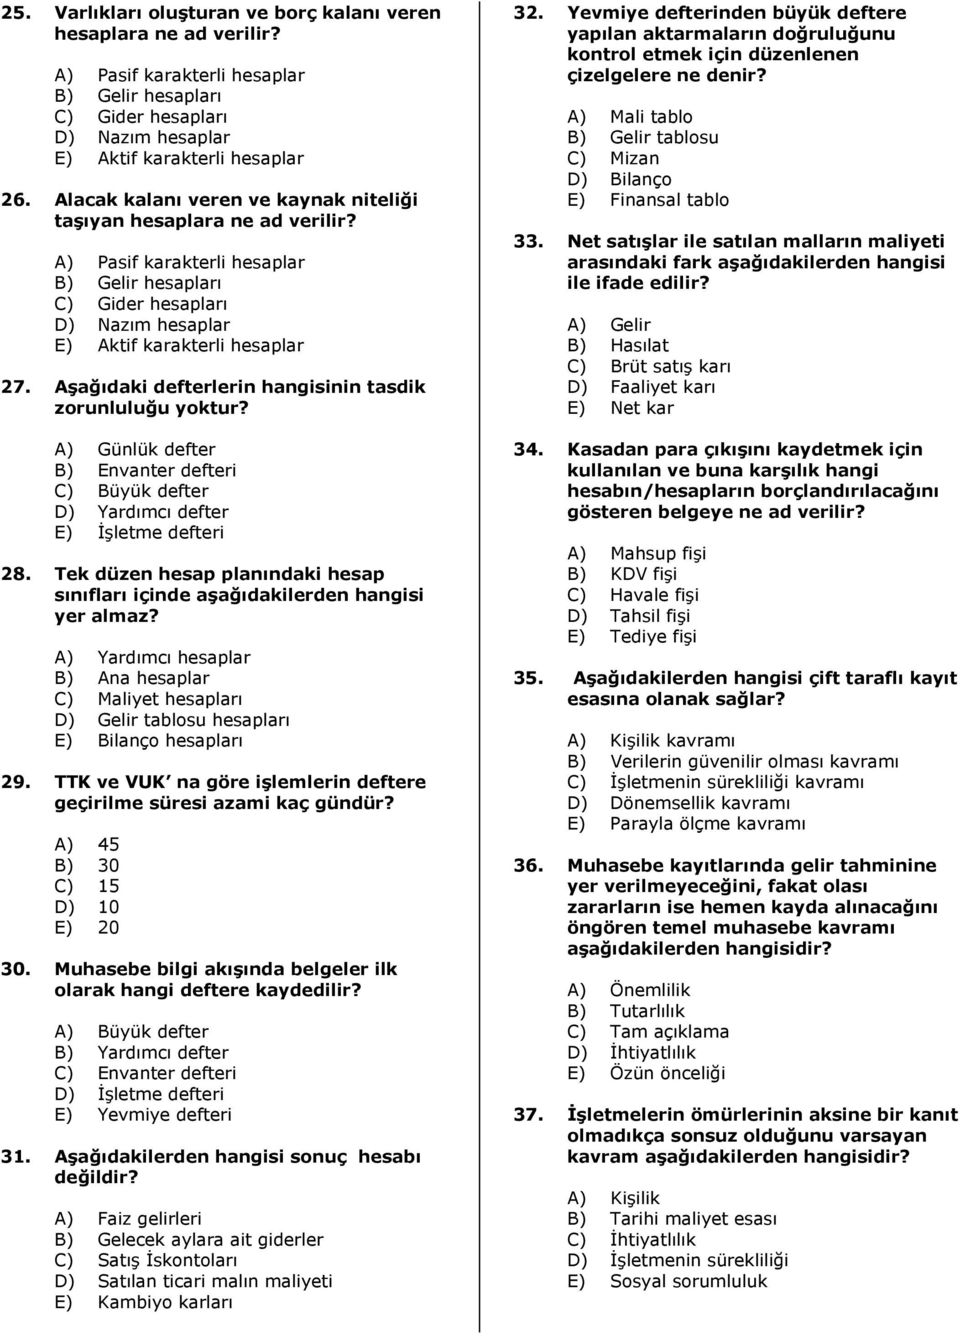 genel muhasebe 100 soruluk test pdf free download